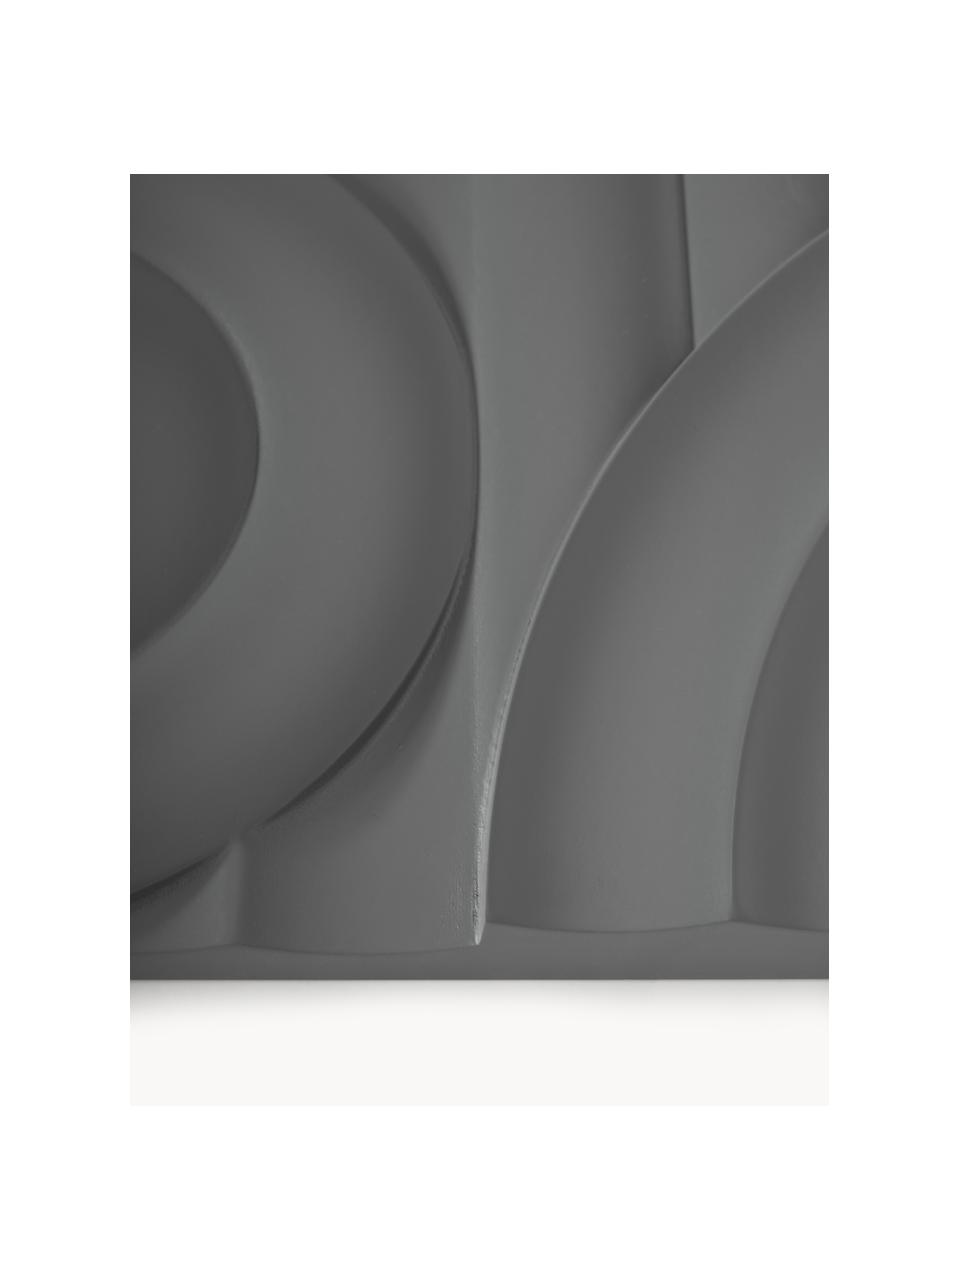 Dekoracja ścienna Massimo, Płyta pilśniowa (MDF), Ciemny szary, S 120 x W 60 cm